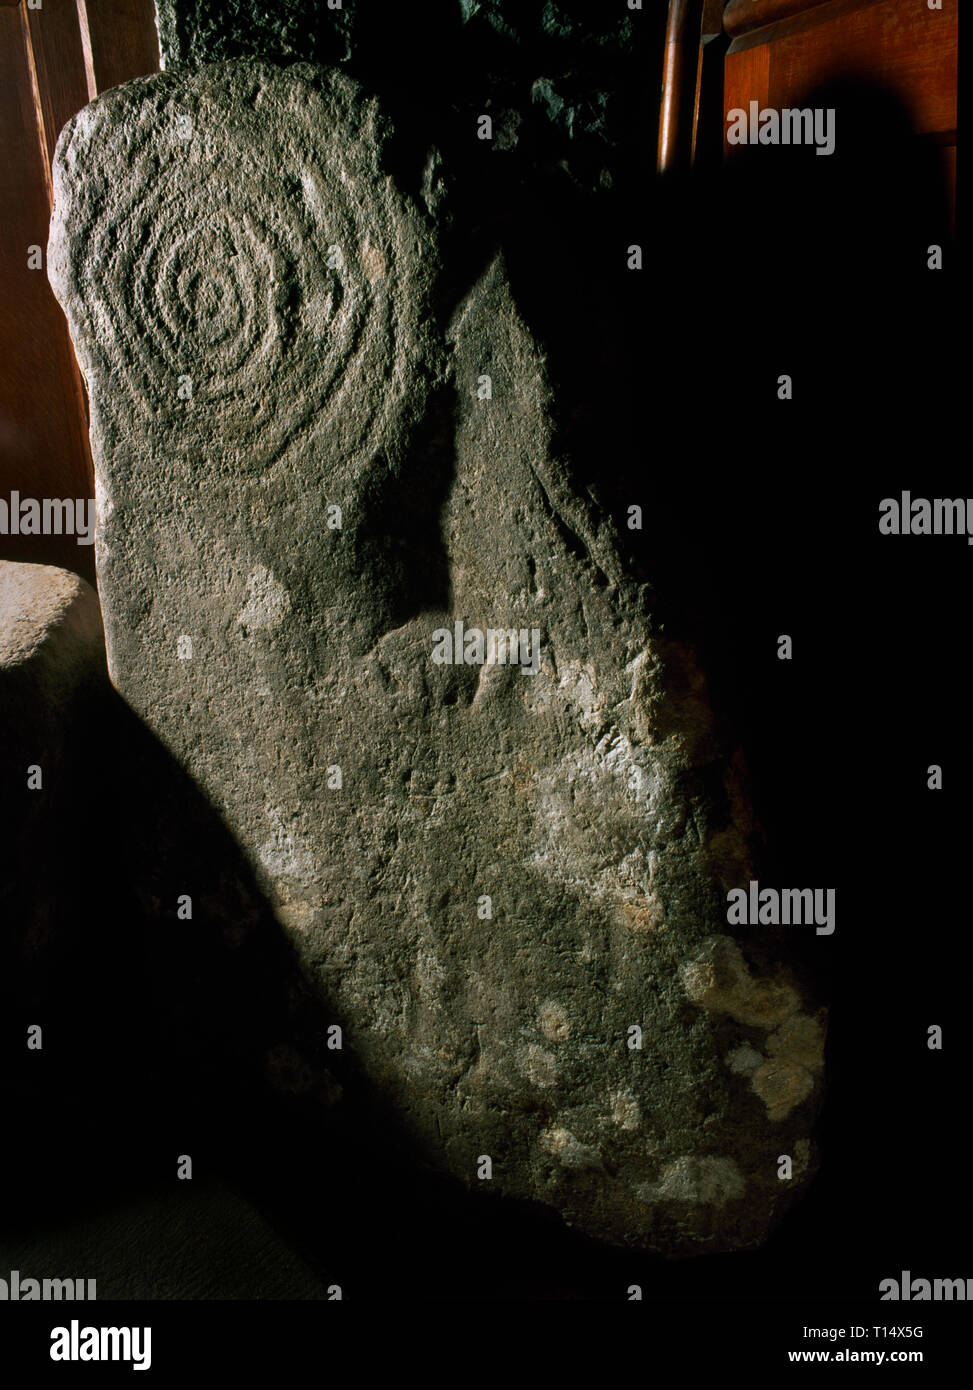 Une pierre sculptée en spirale néolithique (sens horaire, 7 boucles avec 2 mini-cupmarks), conservé dans l'église St Pierre, Llanbedr, Gwynedd, Pays de Galles, Royaume-Uni. Banque D'Images